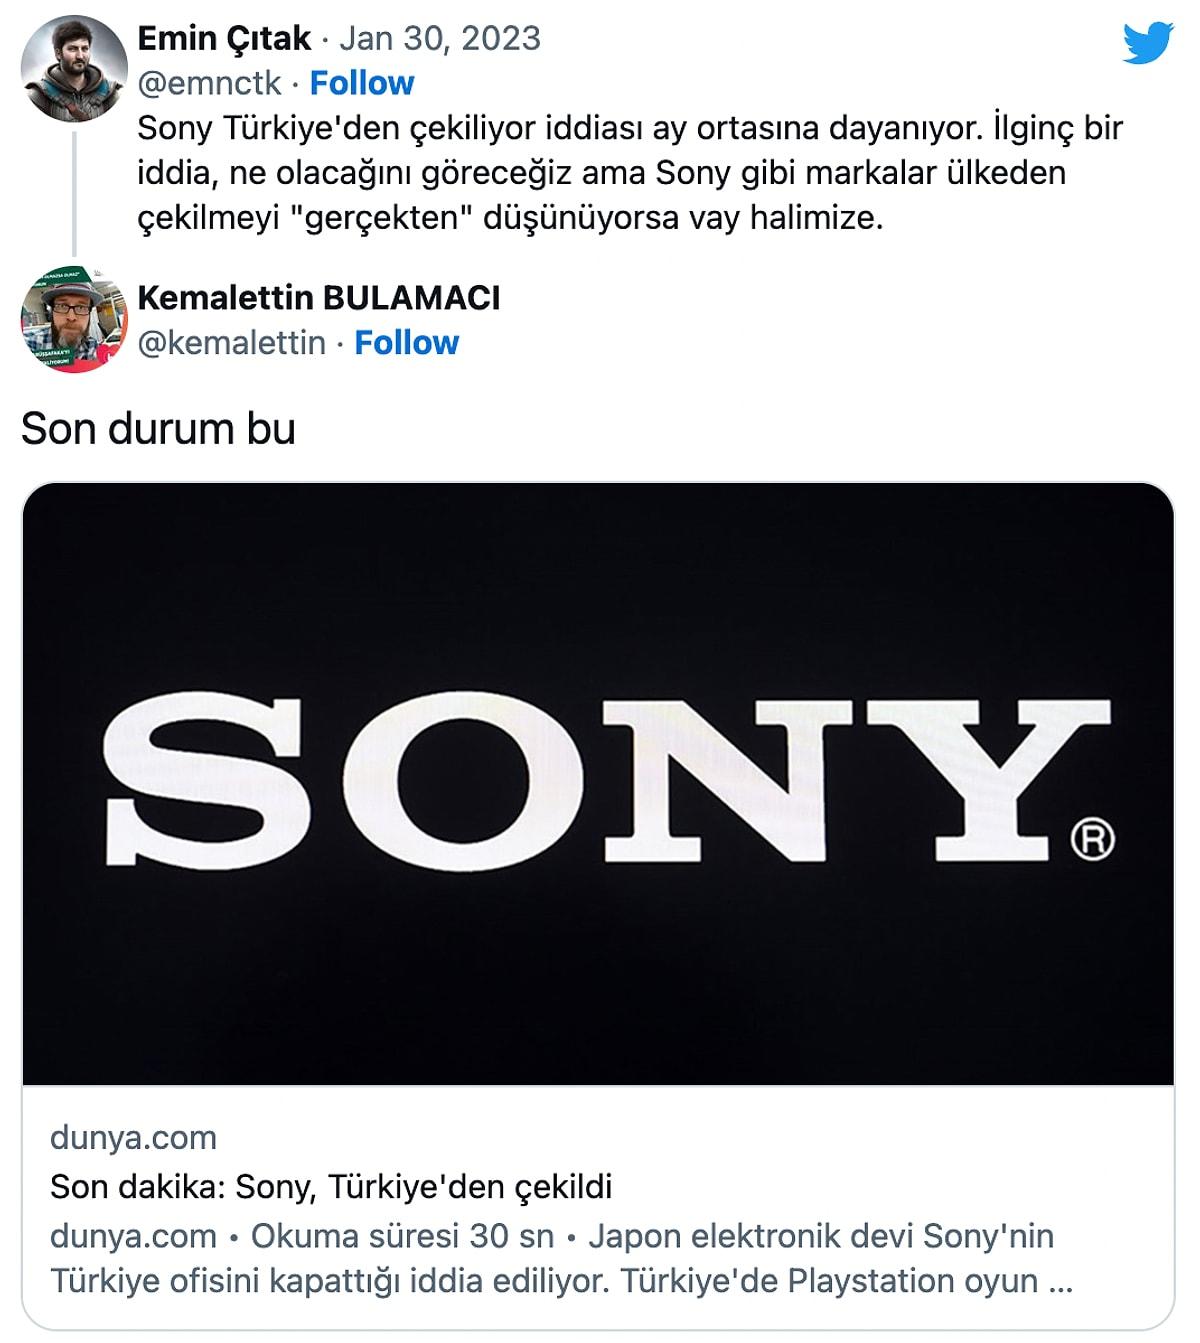 Sony turkey